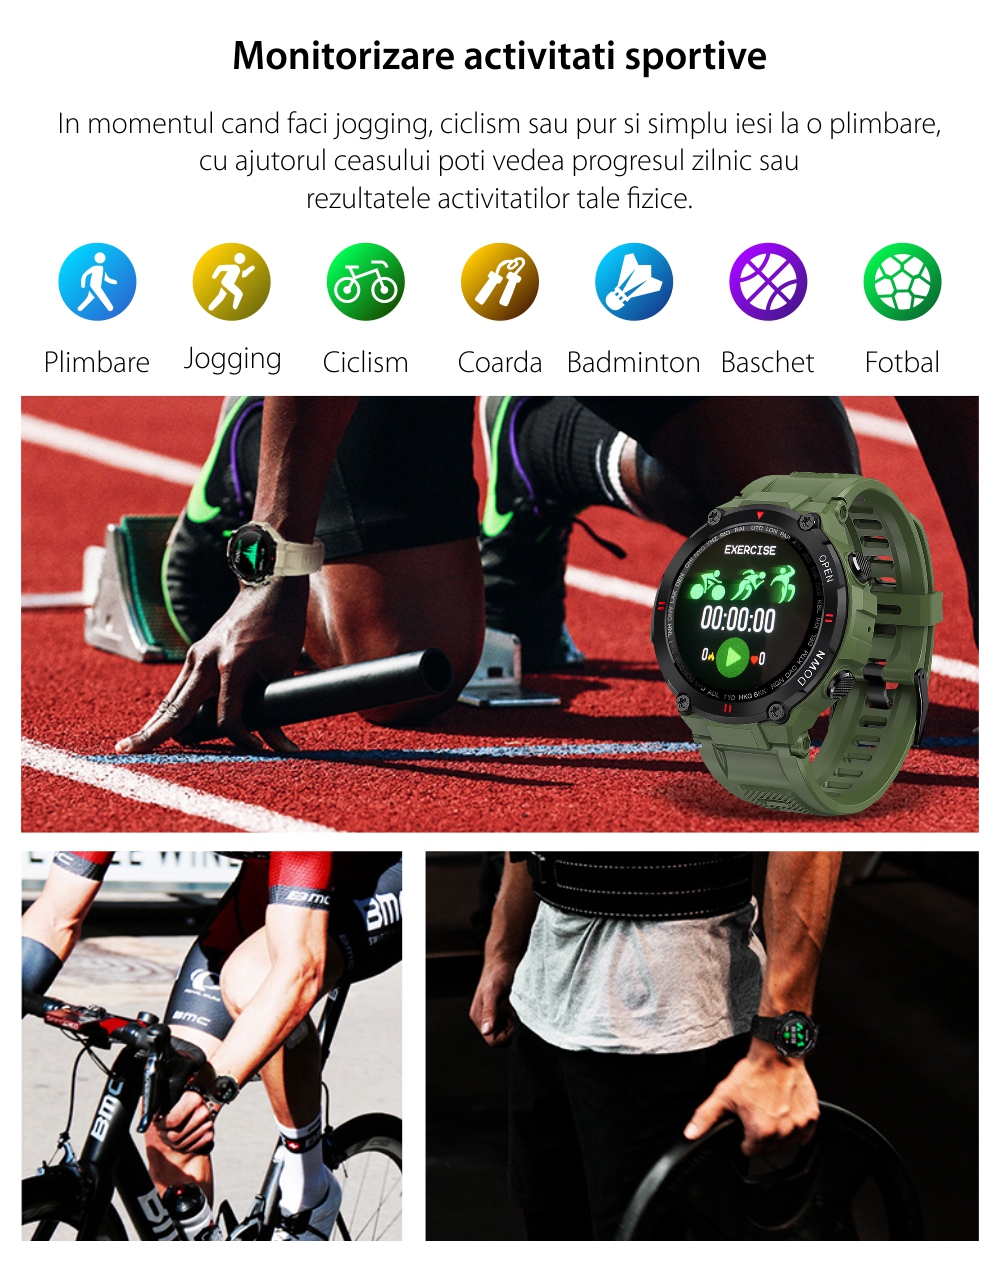 Ceas Smartwatch XK Fitness K22 cu Functii monitorizare sanatate, Calitatea somnului, Moduri sport, Cadran personalizat, Calorii, Distanta, Memento, Verde